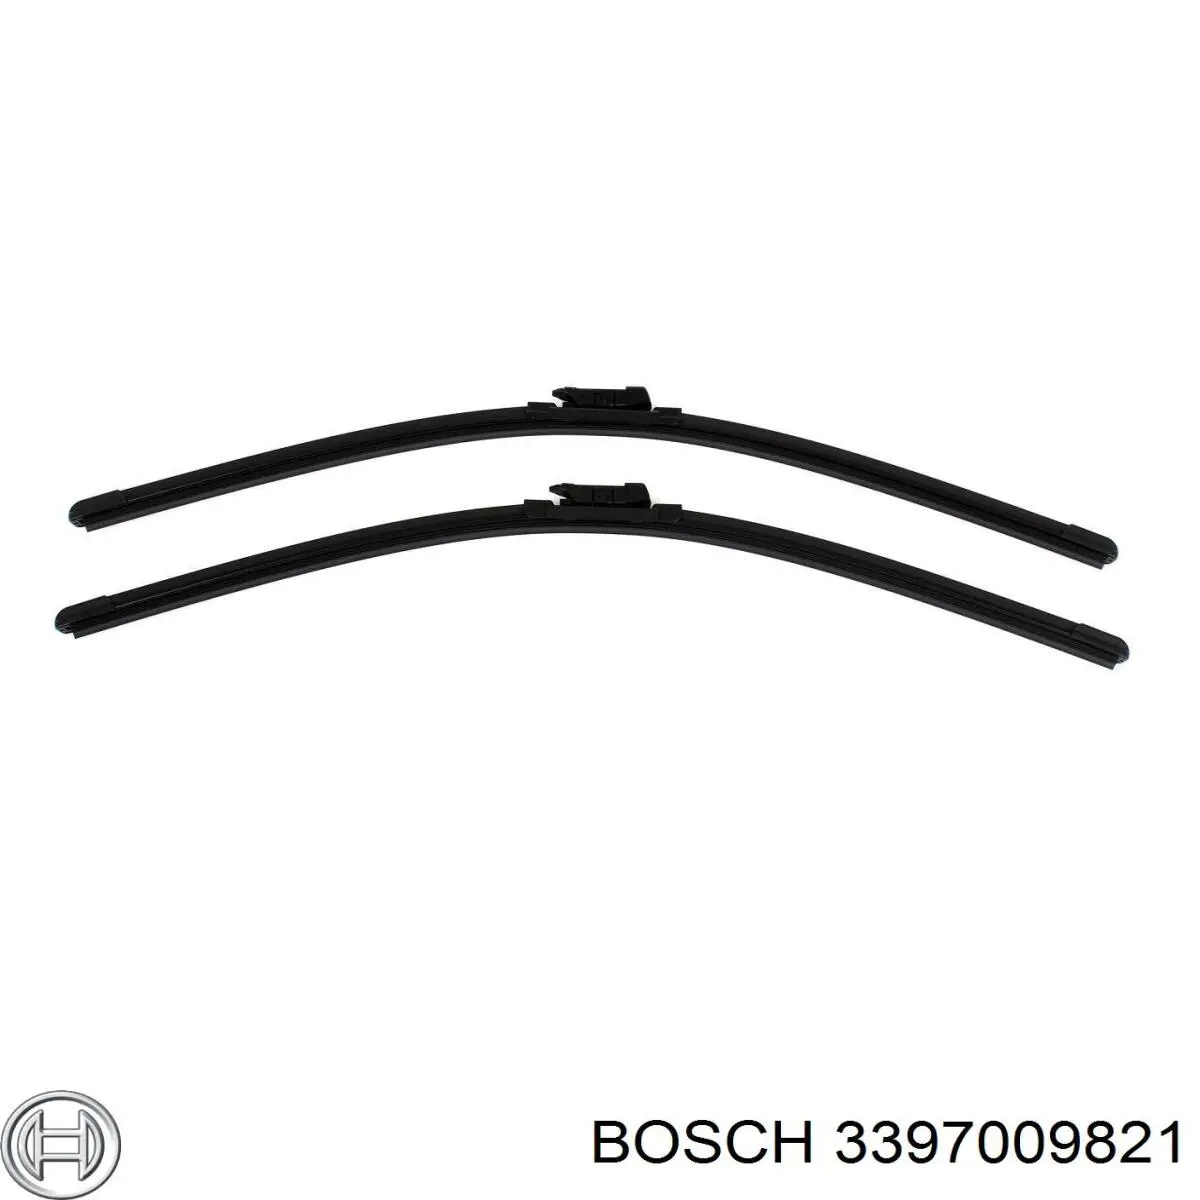 3397009821 Bosch limpiaparabrisas